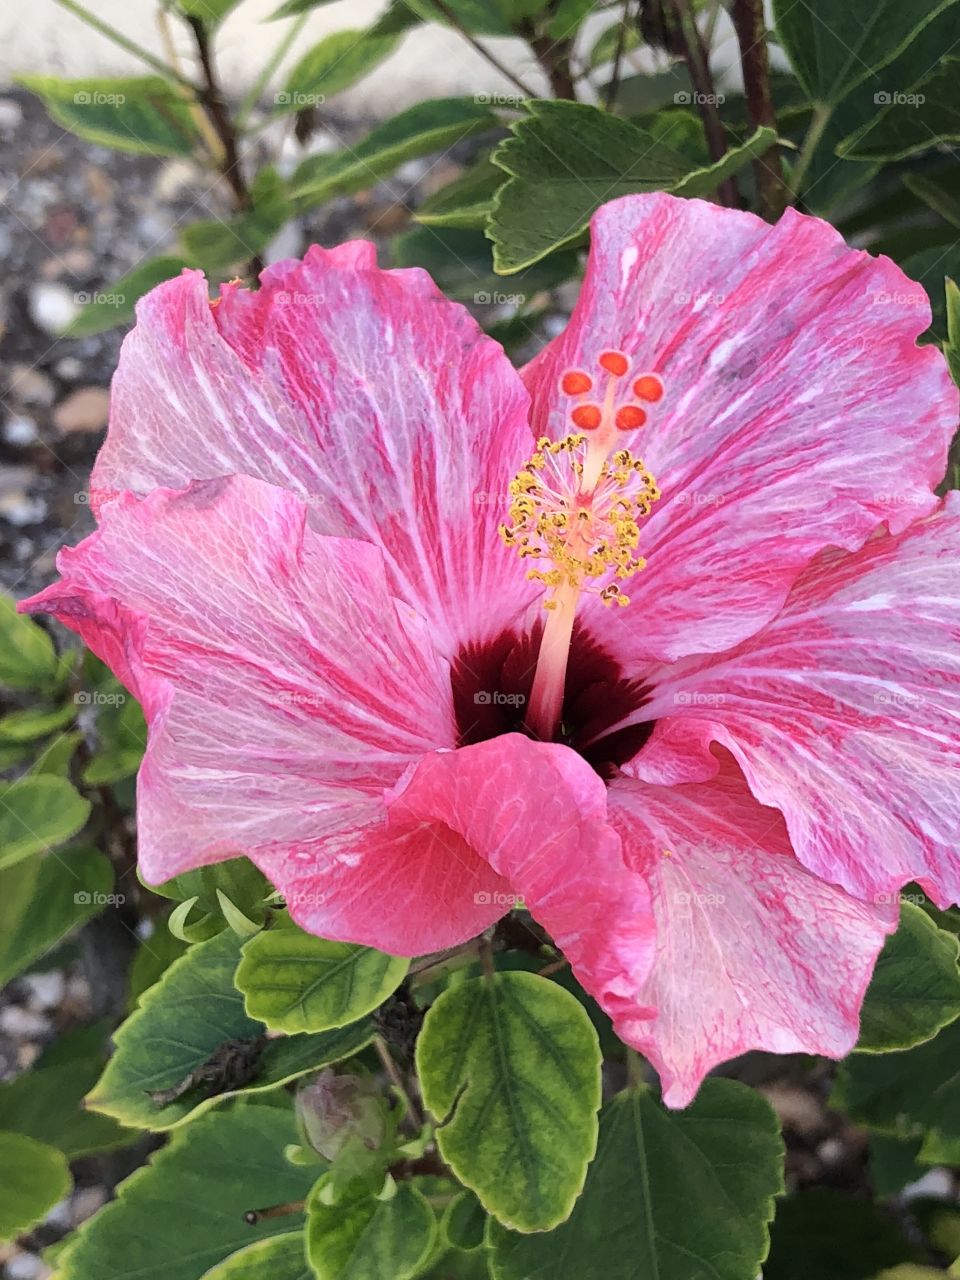 Closeup of a pink flower